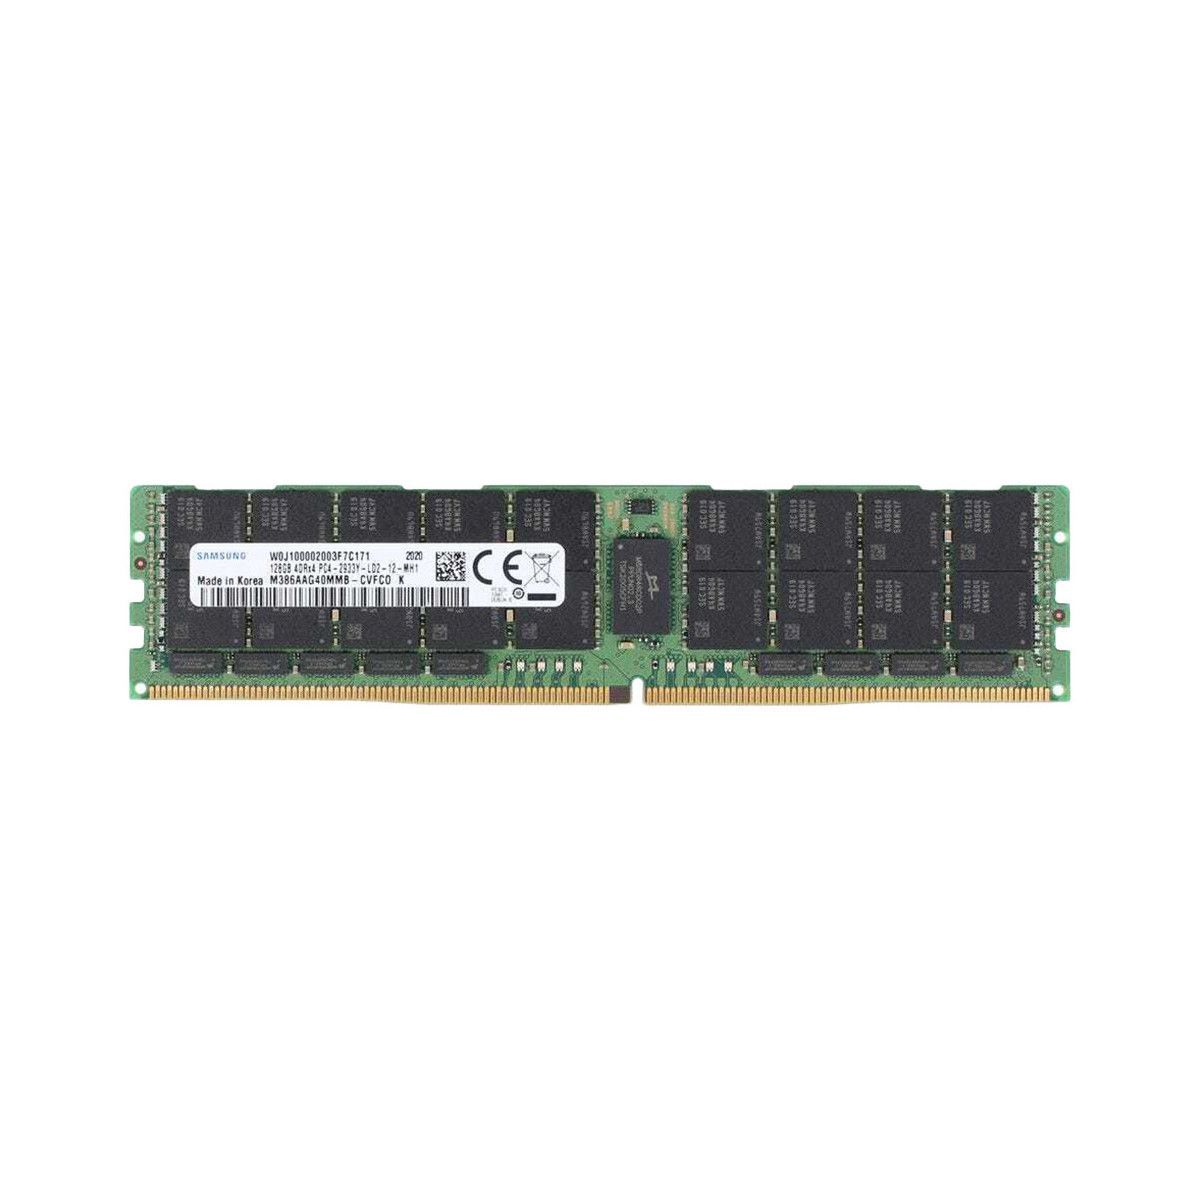 P00928-B21-MS - Memstar 1x 128GB DDR4-2933 LRDIMM PC4-23466U-L - Mem-star Kompatibel OEM Speichermedien 1 - Memstar 